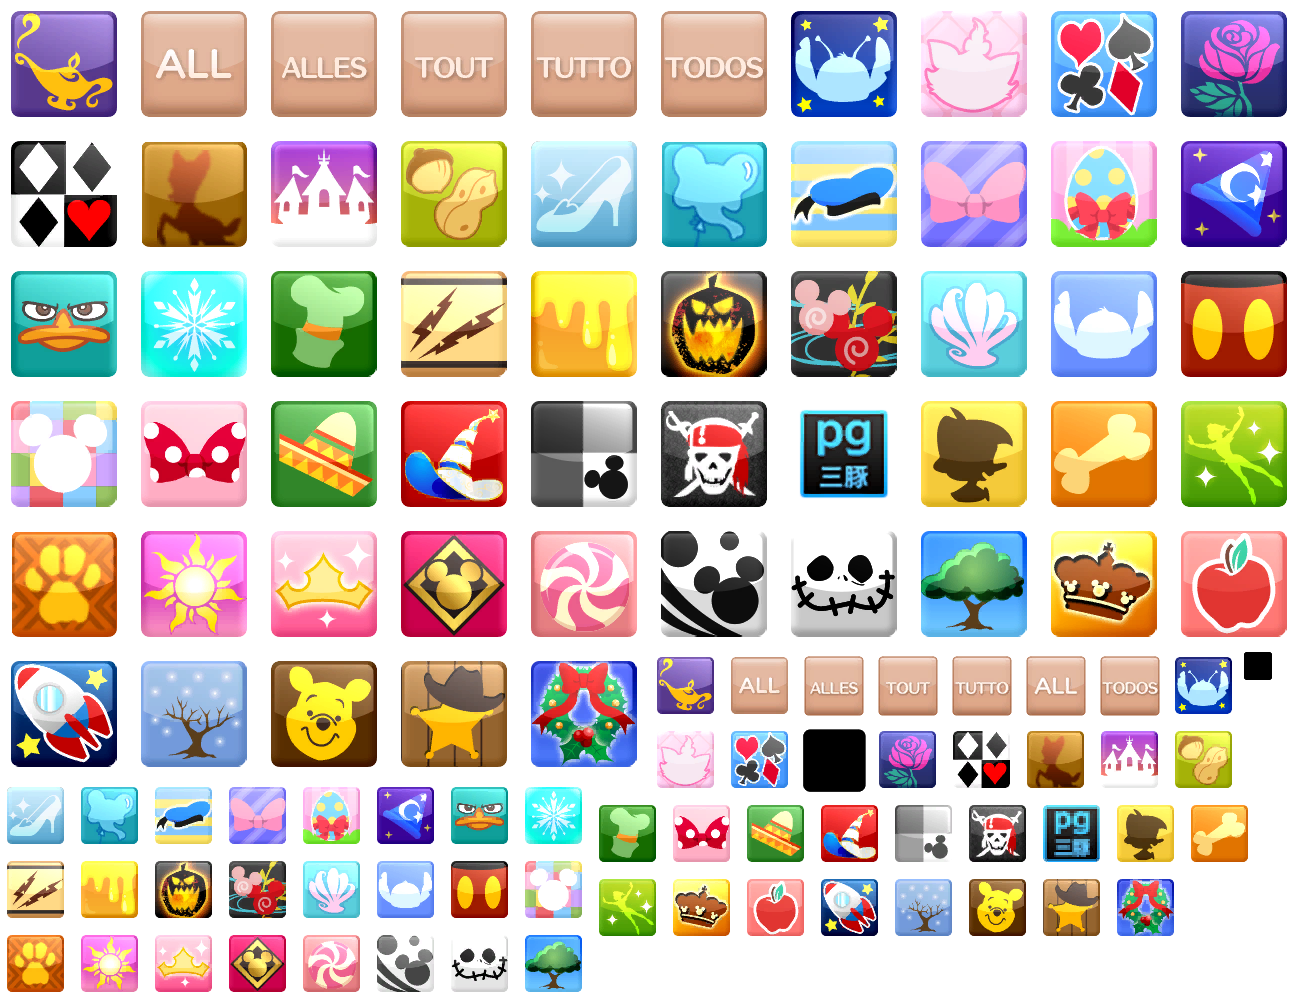 Theme Icons